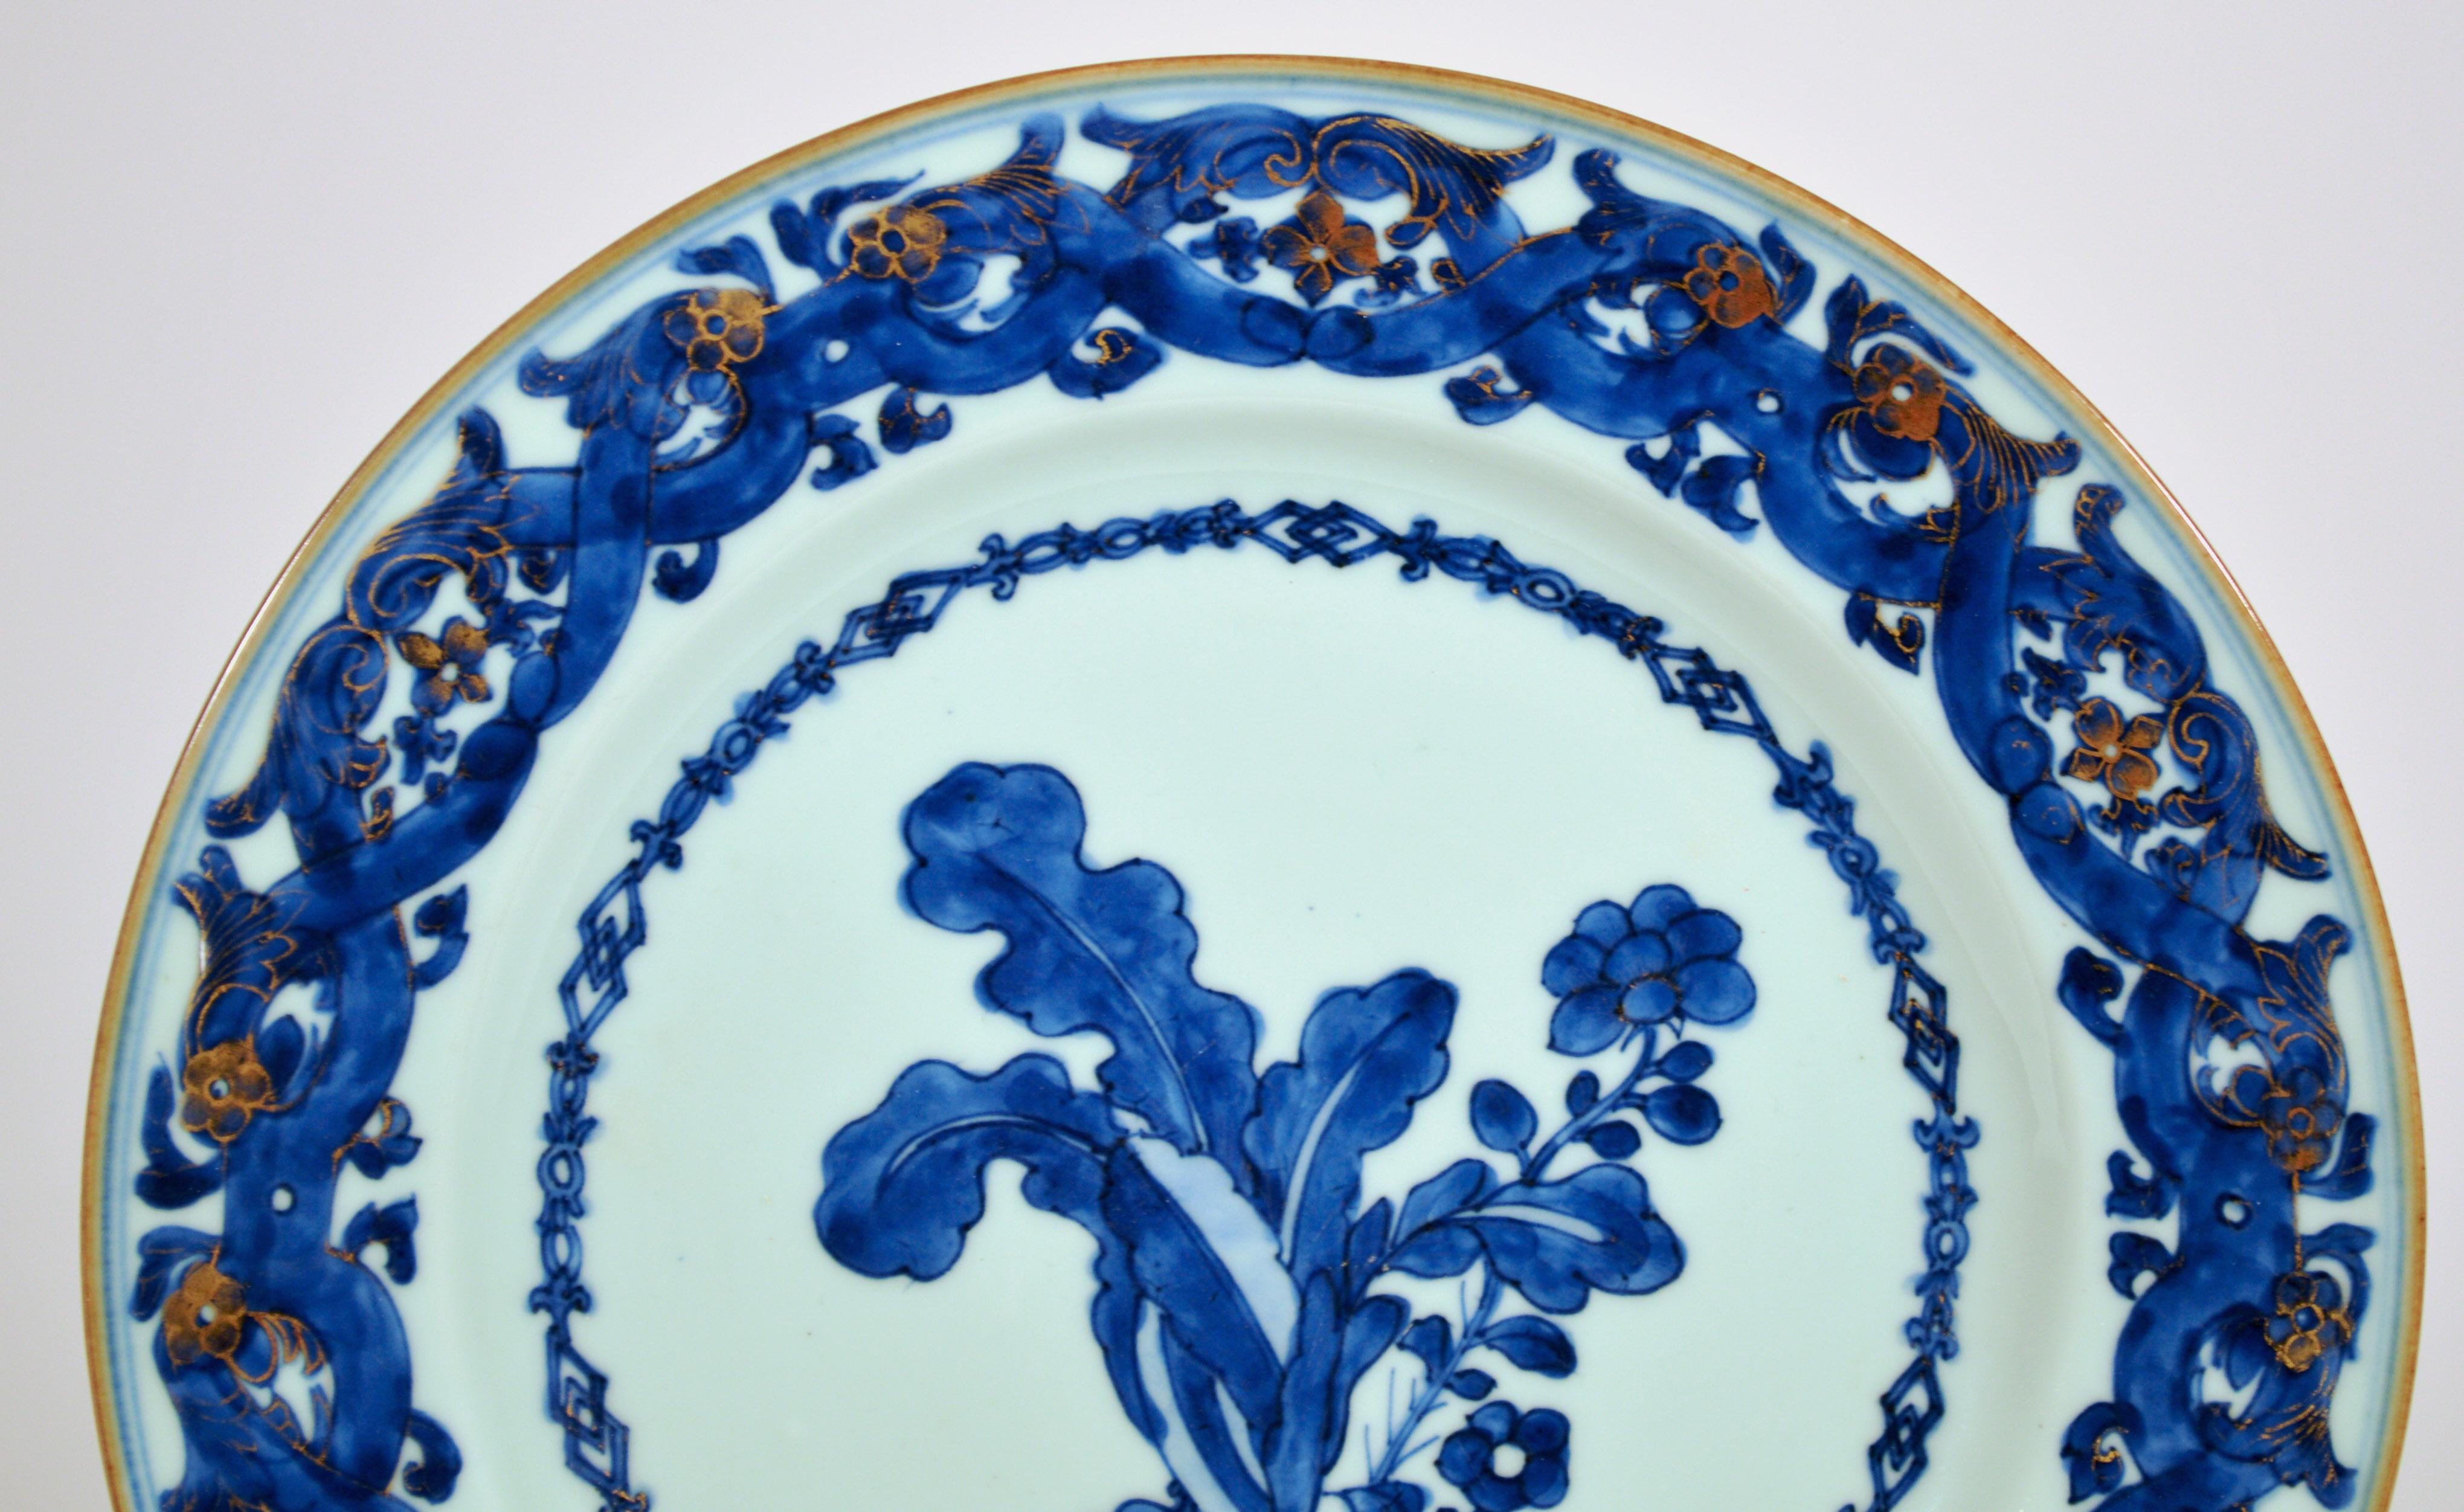 Assiettes en porcelaine d'exportation chinoise bleu et blanc,
D'après Maria Sybille Merian,
Design/One,
Marché néerlandais, 
Vers 1740-45

Paire d'assiettes bleues et blanches d'après Maria Sybille Merian, probablement de l'atelier de Pronk.